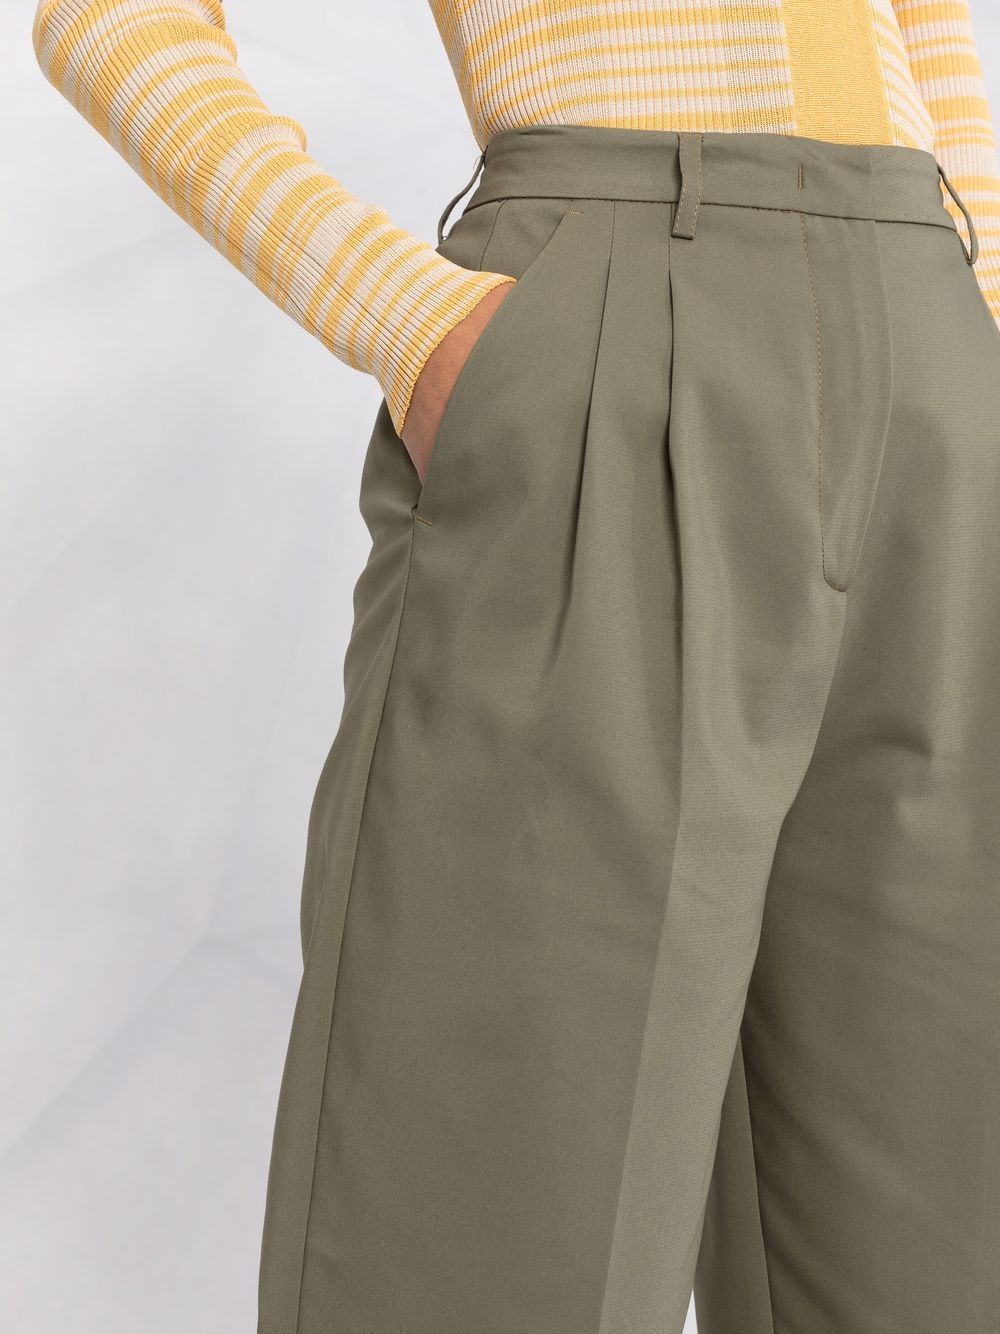 фото Blanca vita укороченные брюки со складками